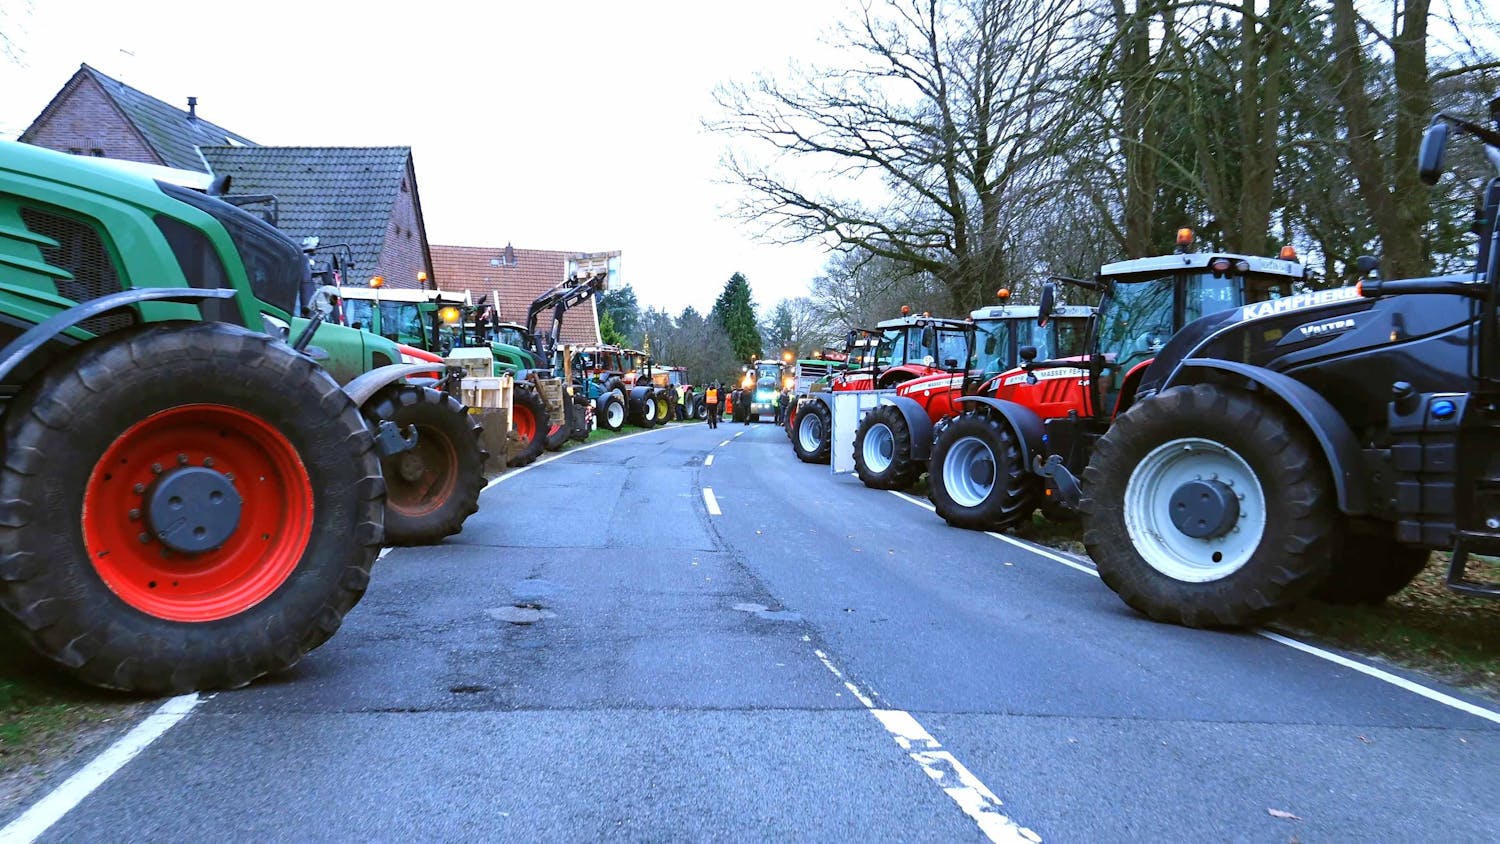 Deutsche Städte wegen Bauernprotesten unzugänglich, auch Bürger demonstrieren